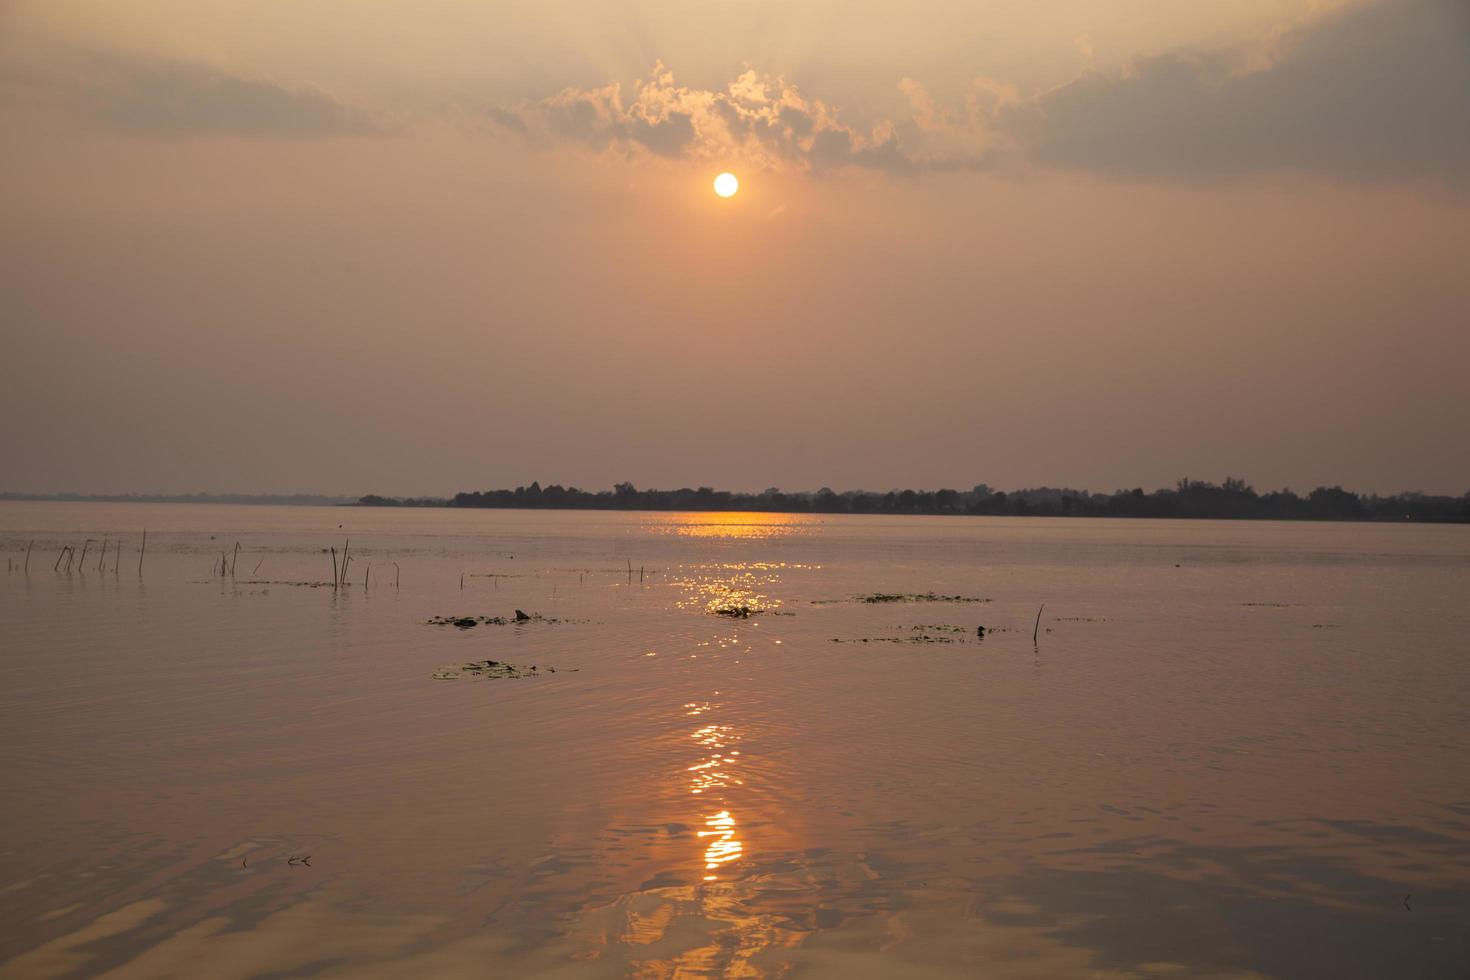 coucher de soleil sur un lac en thaïlande photo